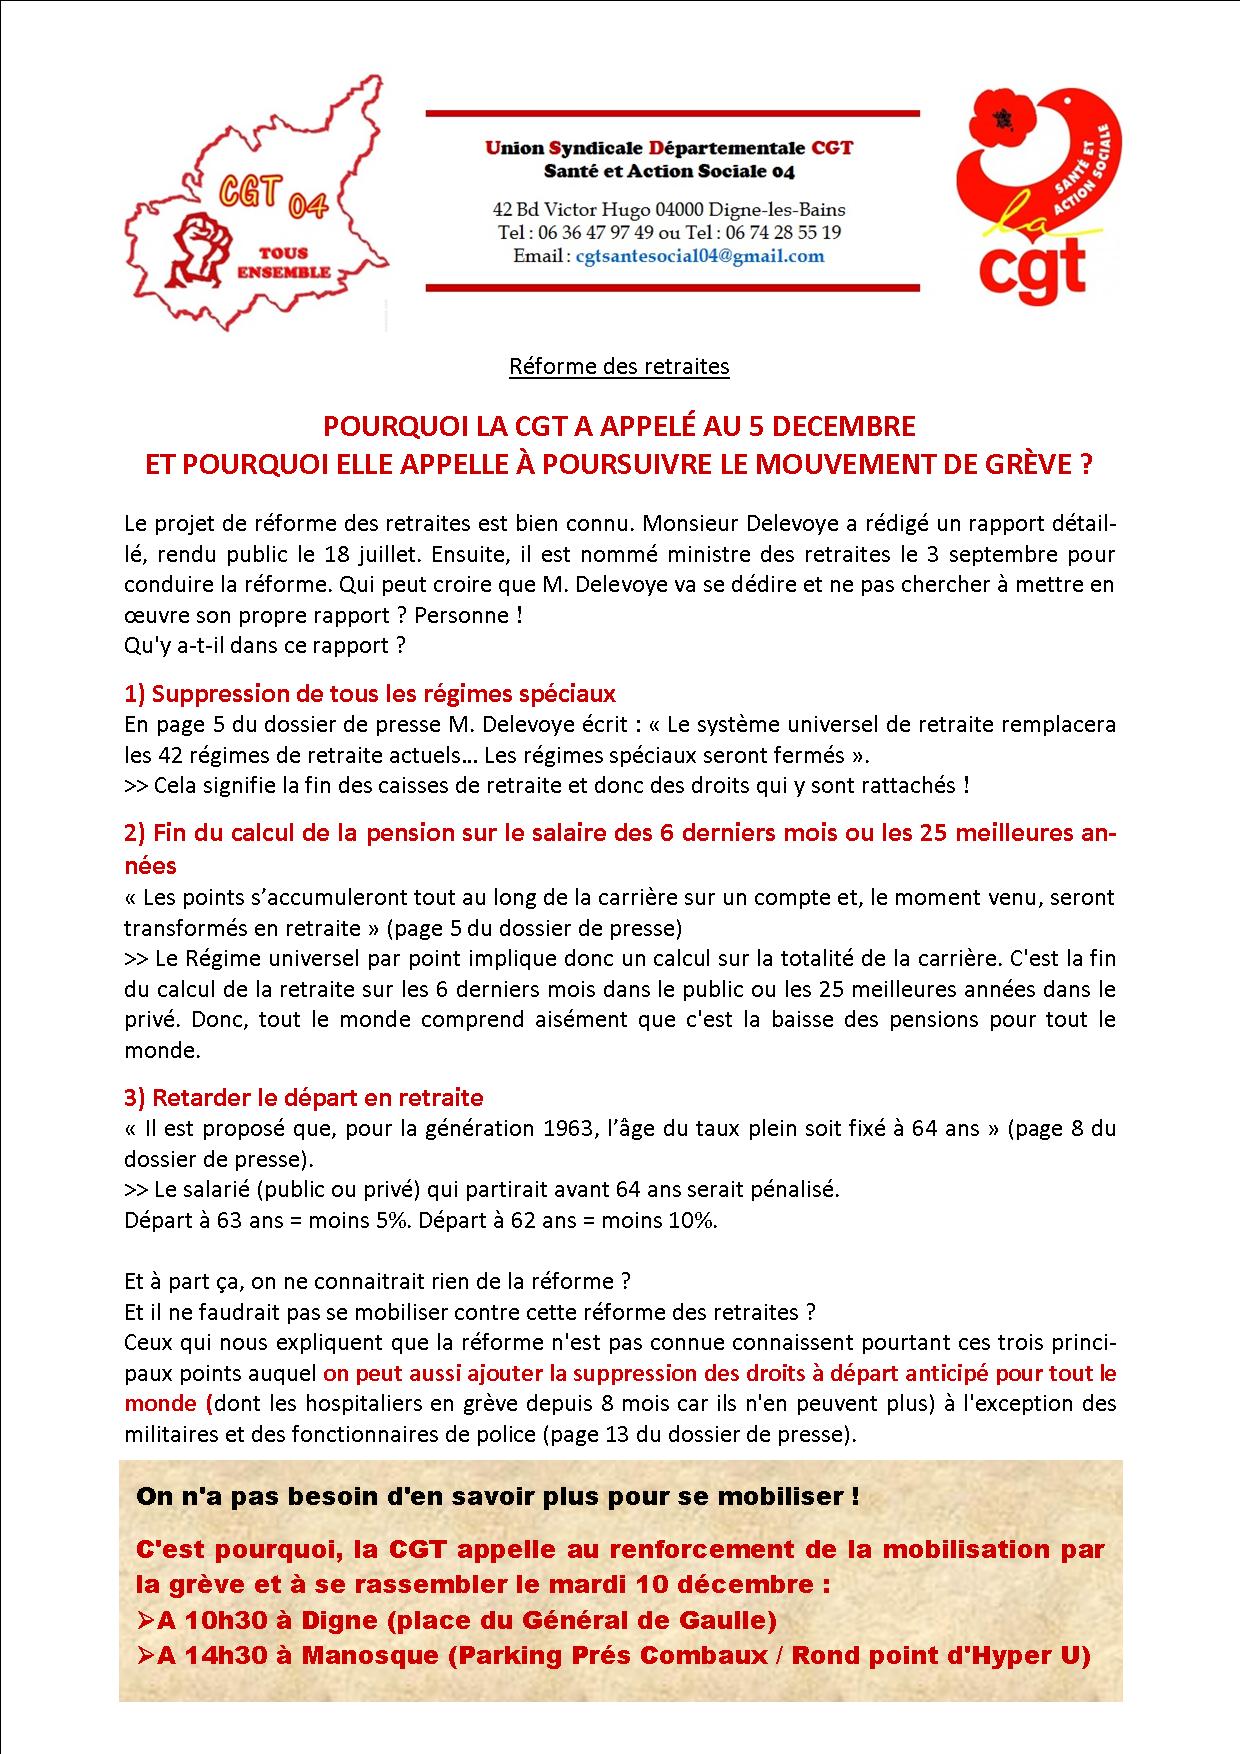 Tract USD CGT Santé Social 04 réforme retraites 10 décembre 2019